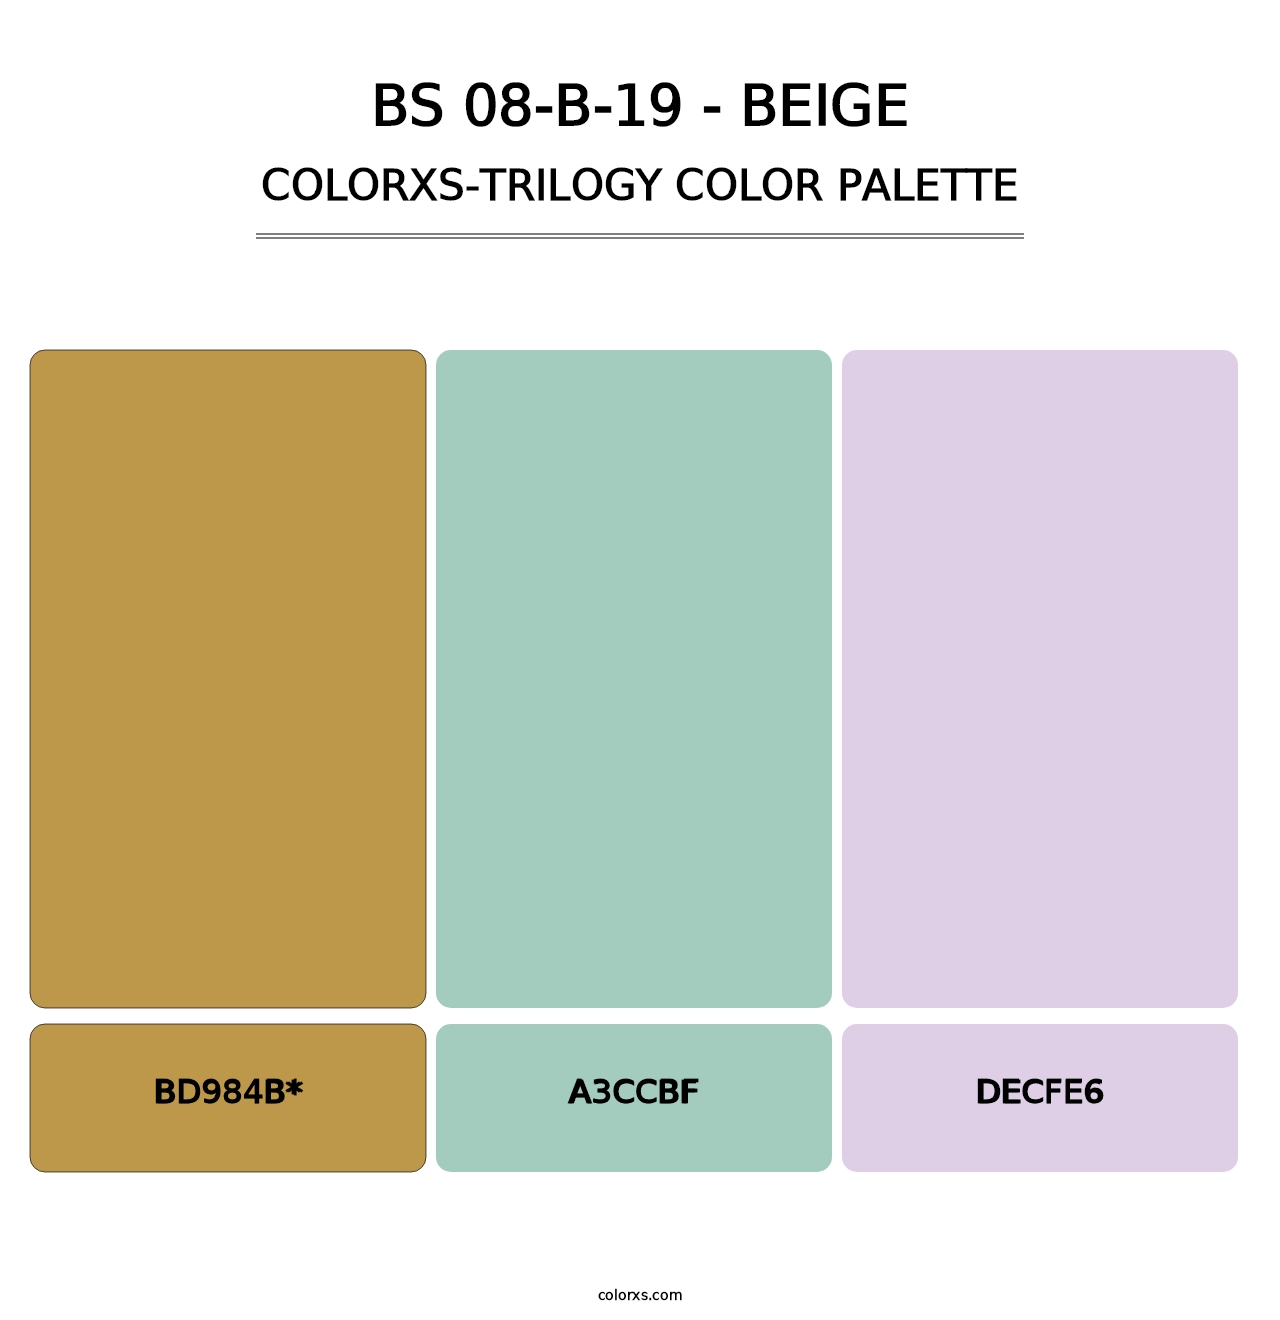 BS 08-B-19 - Beige - Colorxs Trilogy Palette